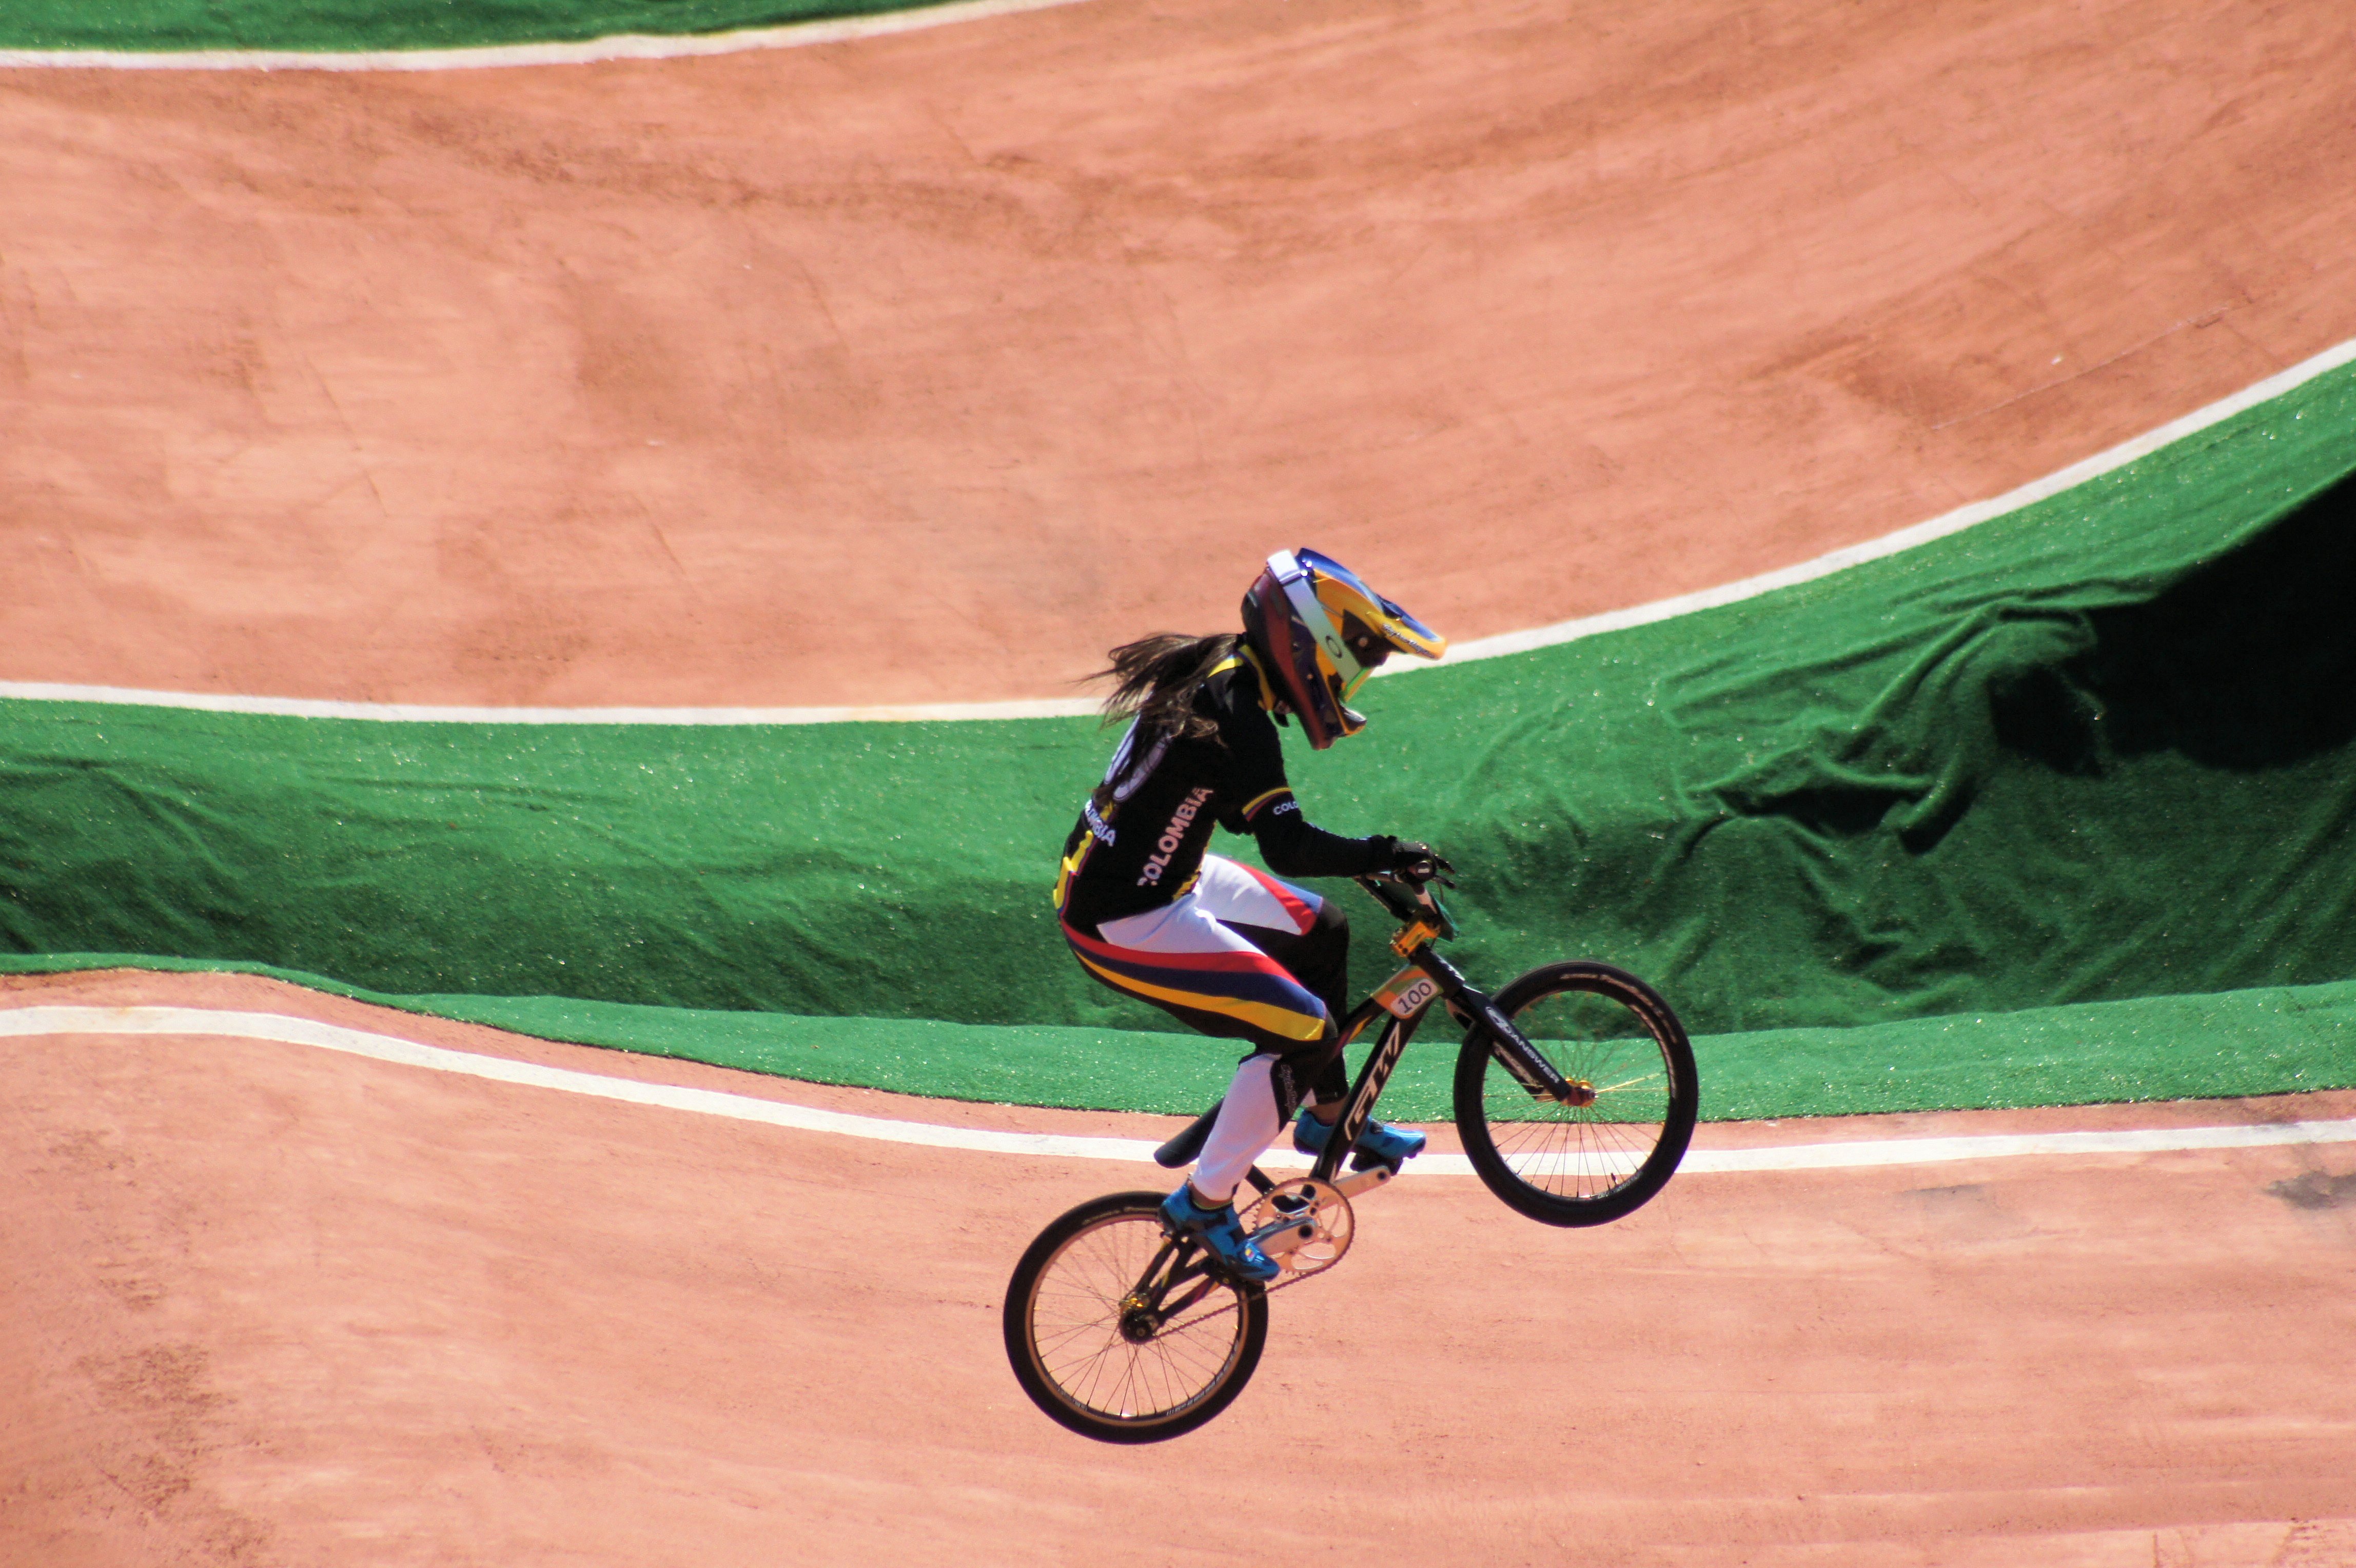 2016. Ciclismo BMX-BMX Cycling (29016608602).jpg - Wikimedia